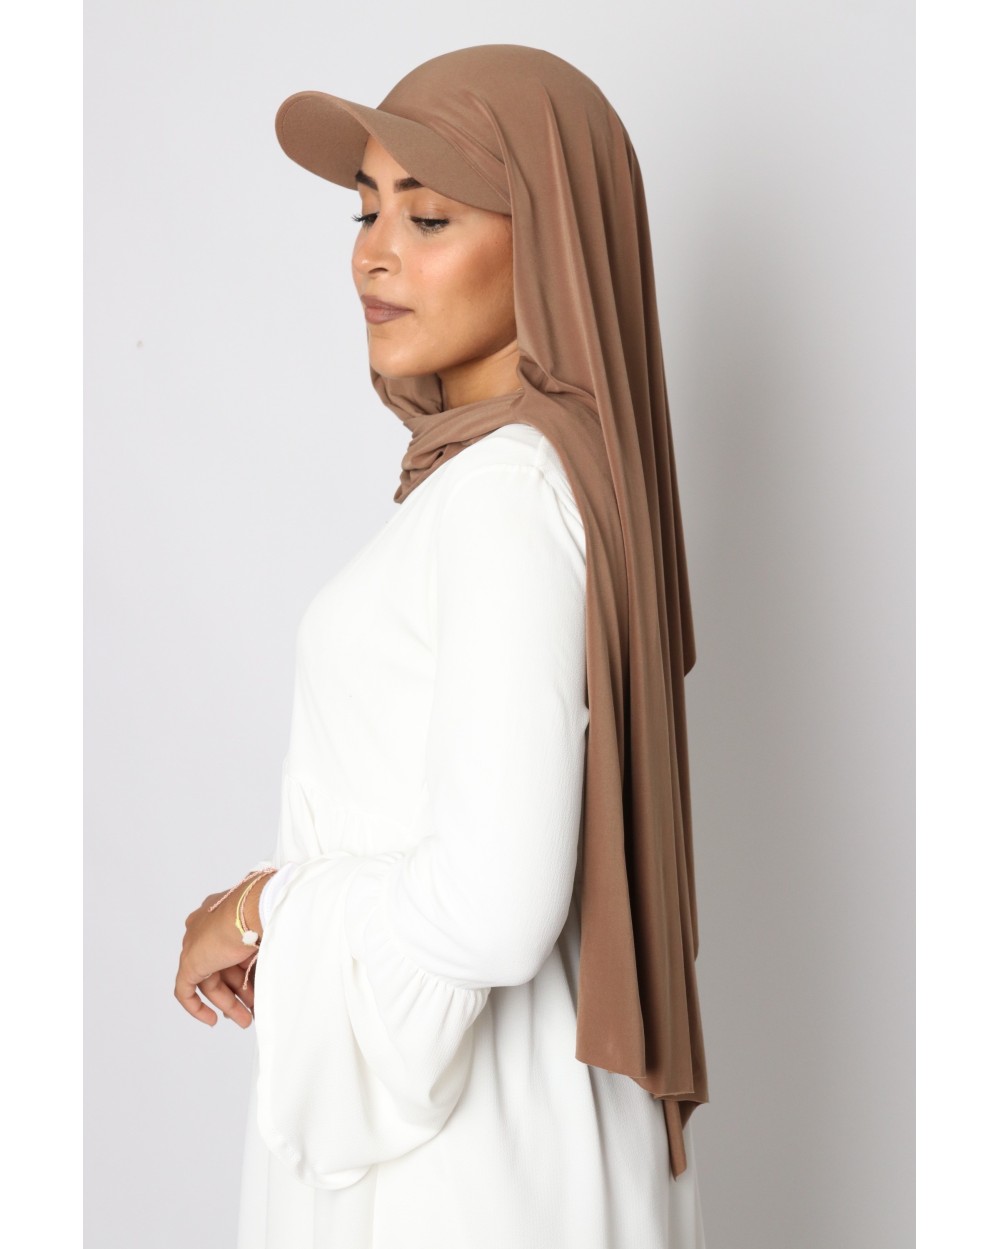 Hijab à enfiler avec casquette intégrée